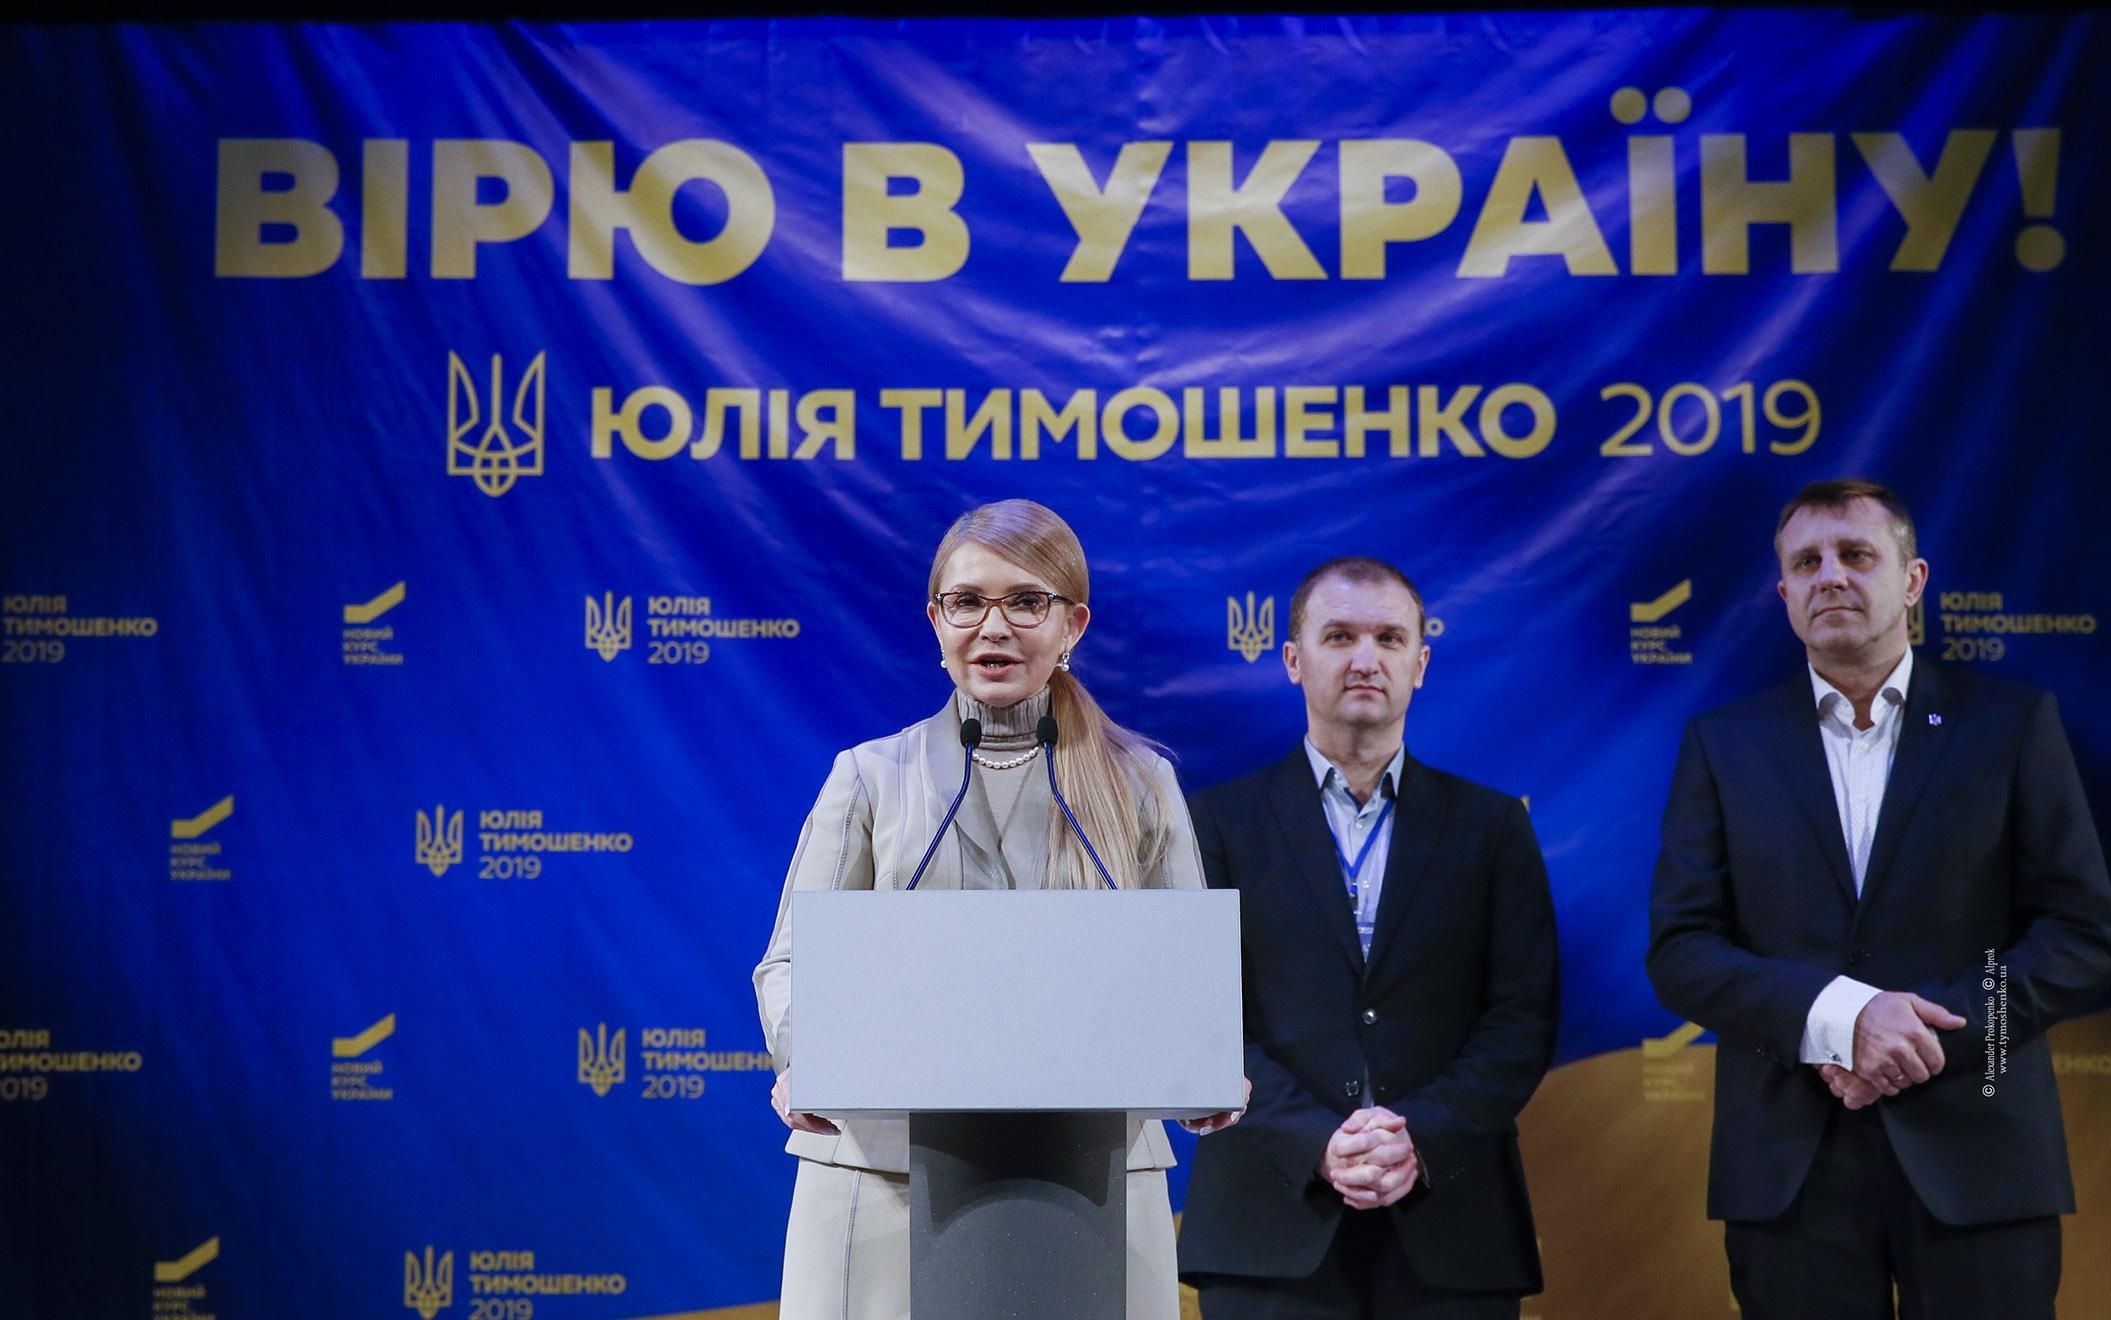 Монетизация субсидий – это еще одна технология подкупа избирателей Порошенко, – Юлия Тимошенко